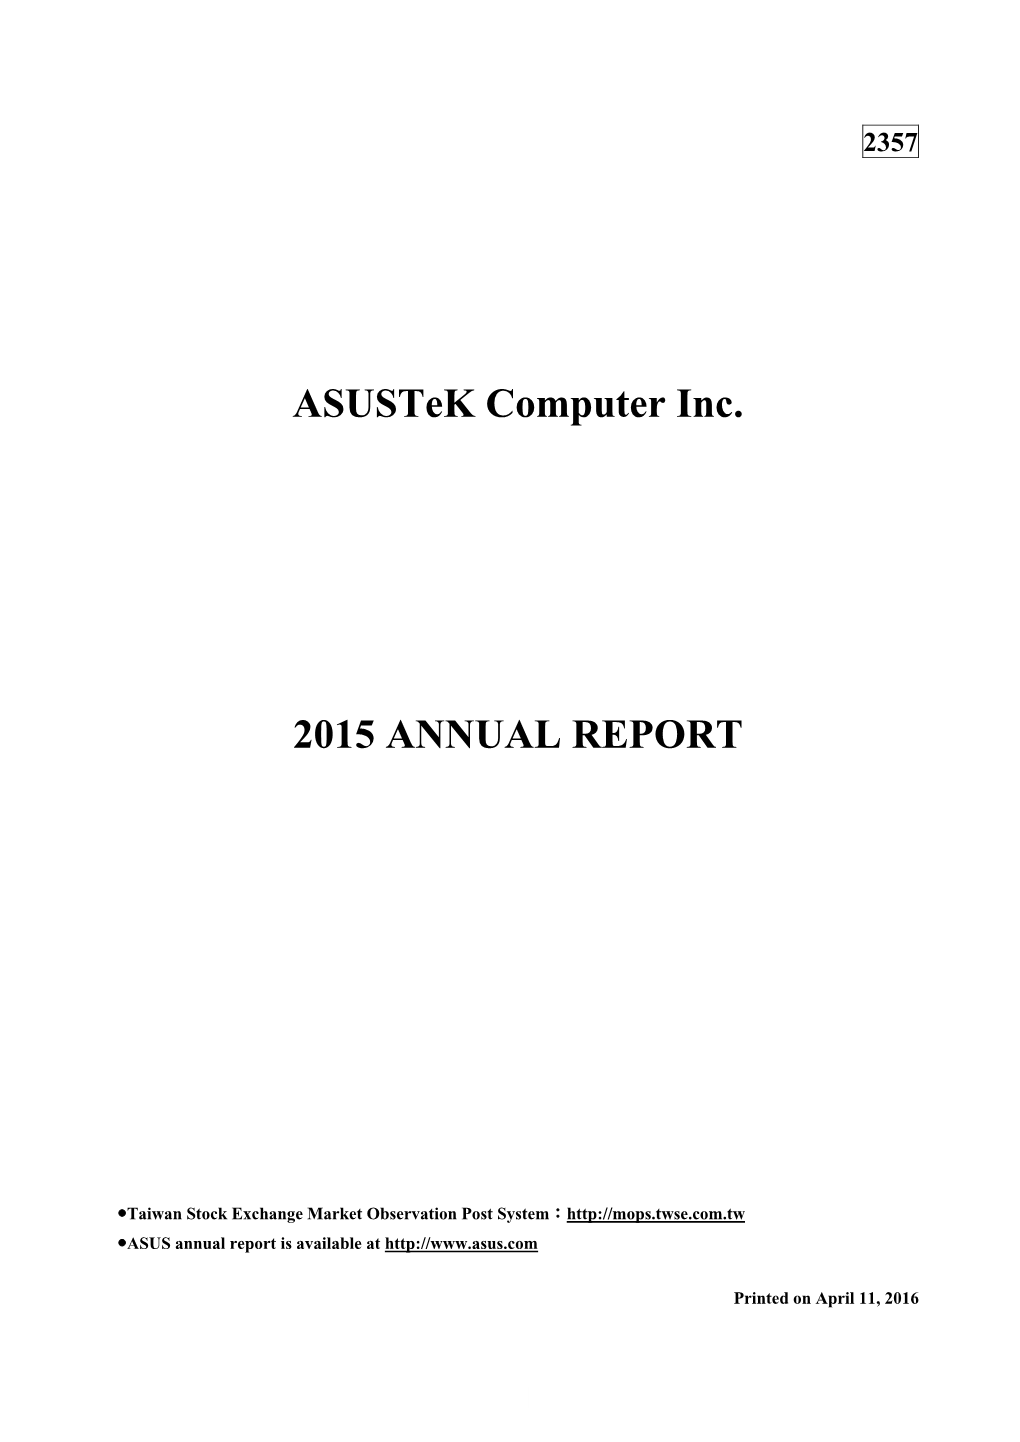 Asustek Computer Inc. 2015 ANNUAL REPORT